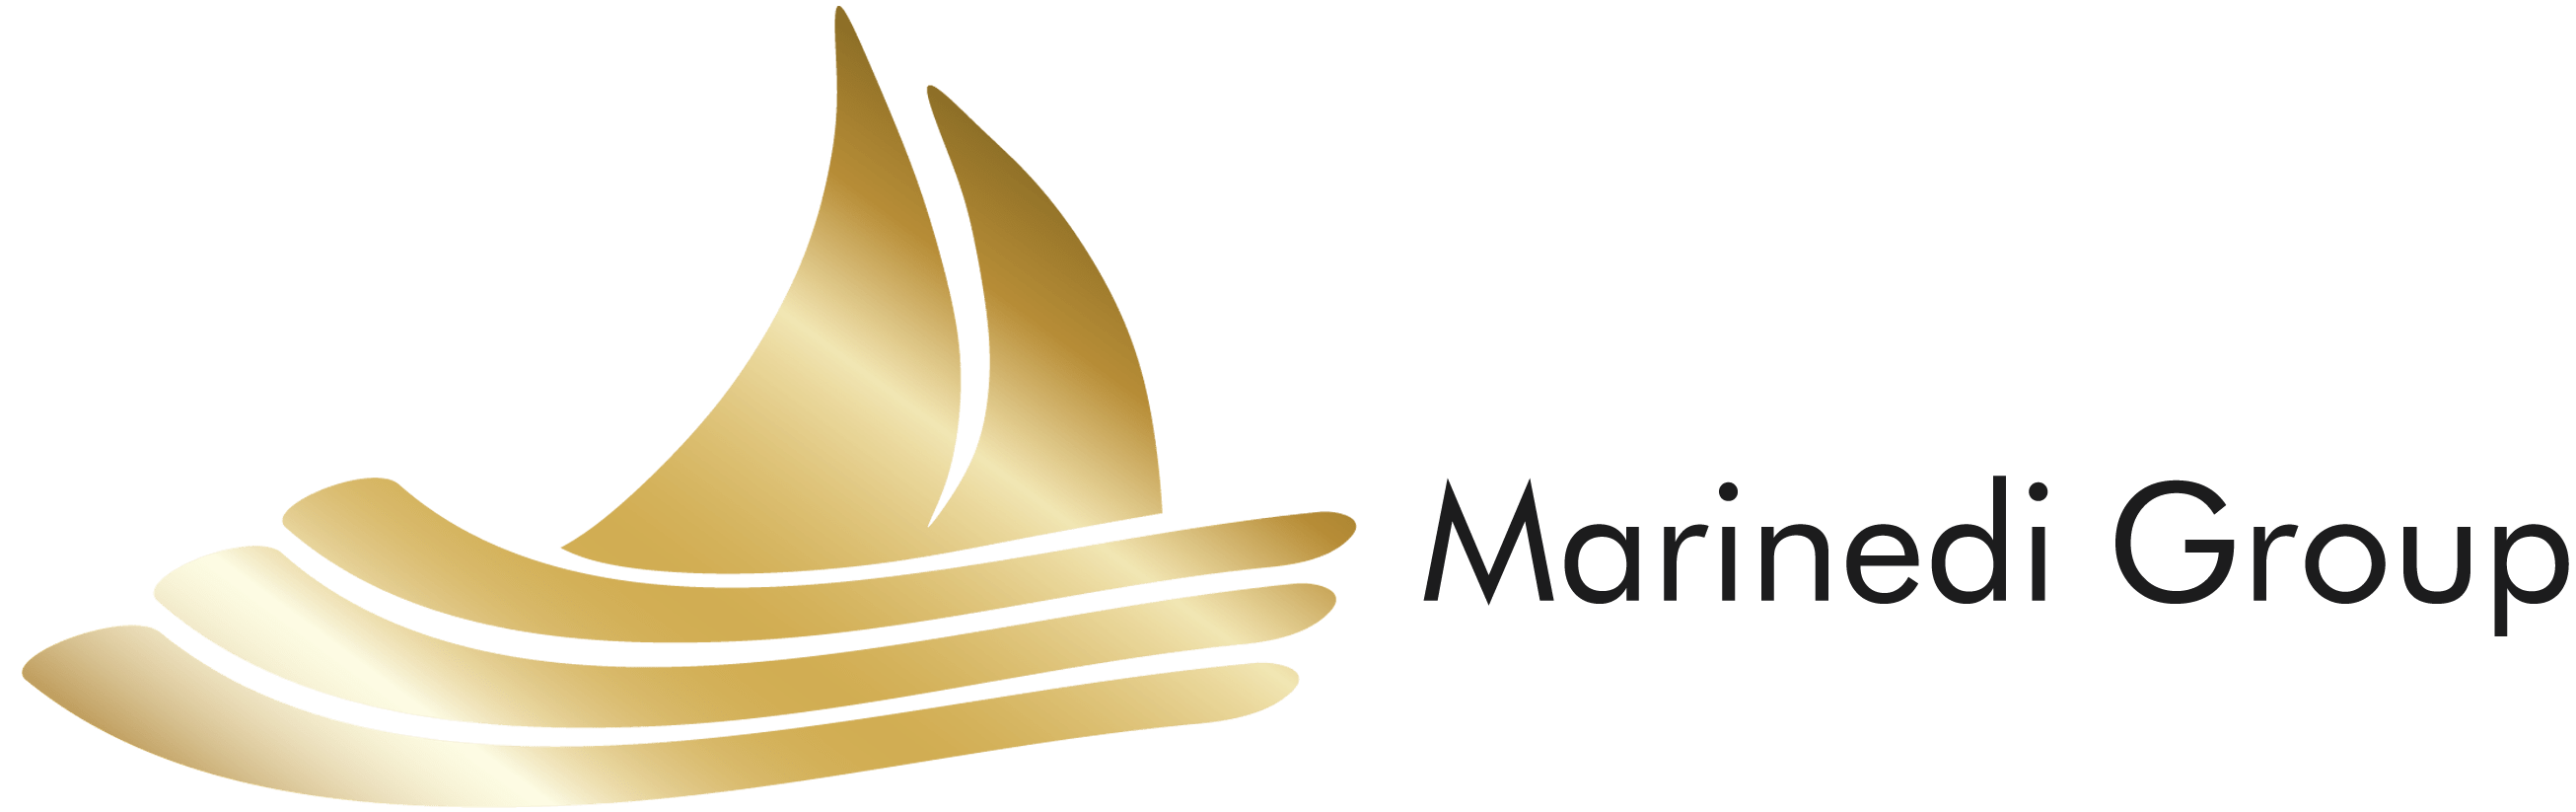 marinedigroup_logo